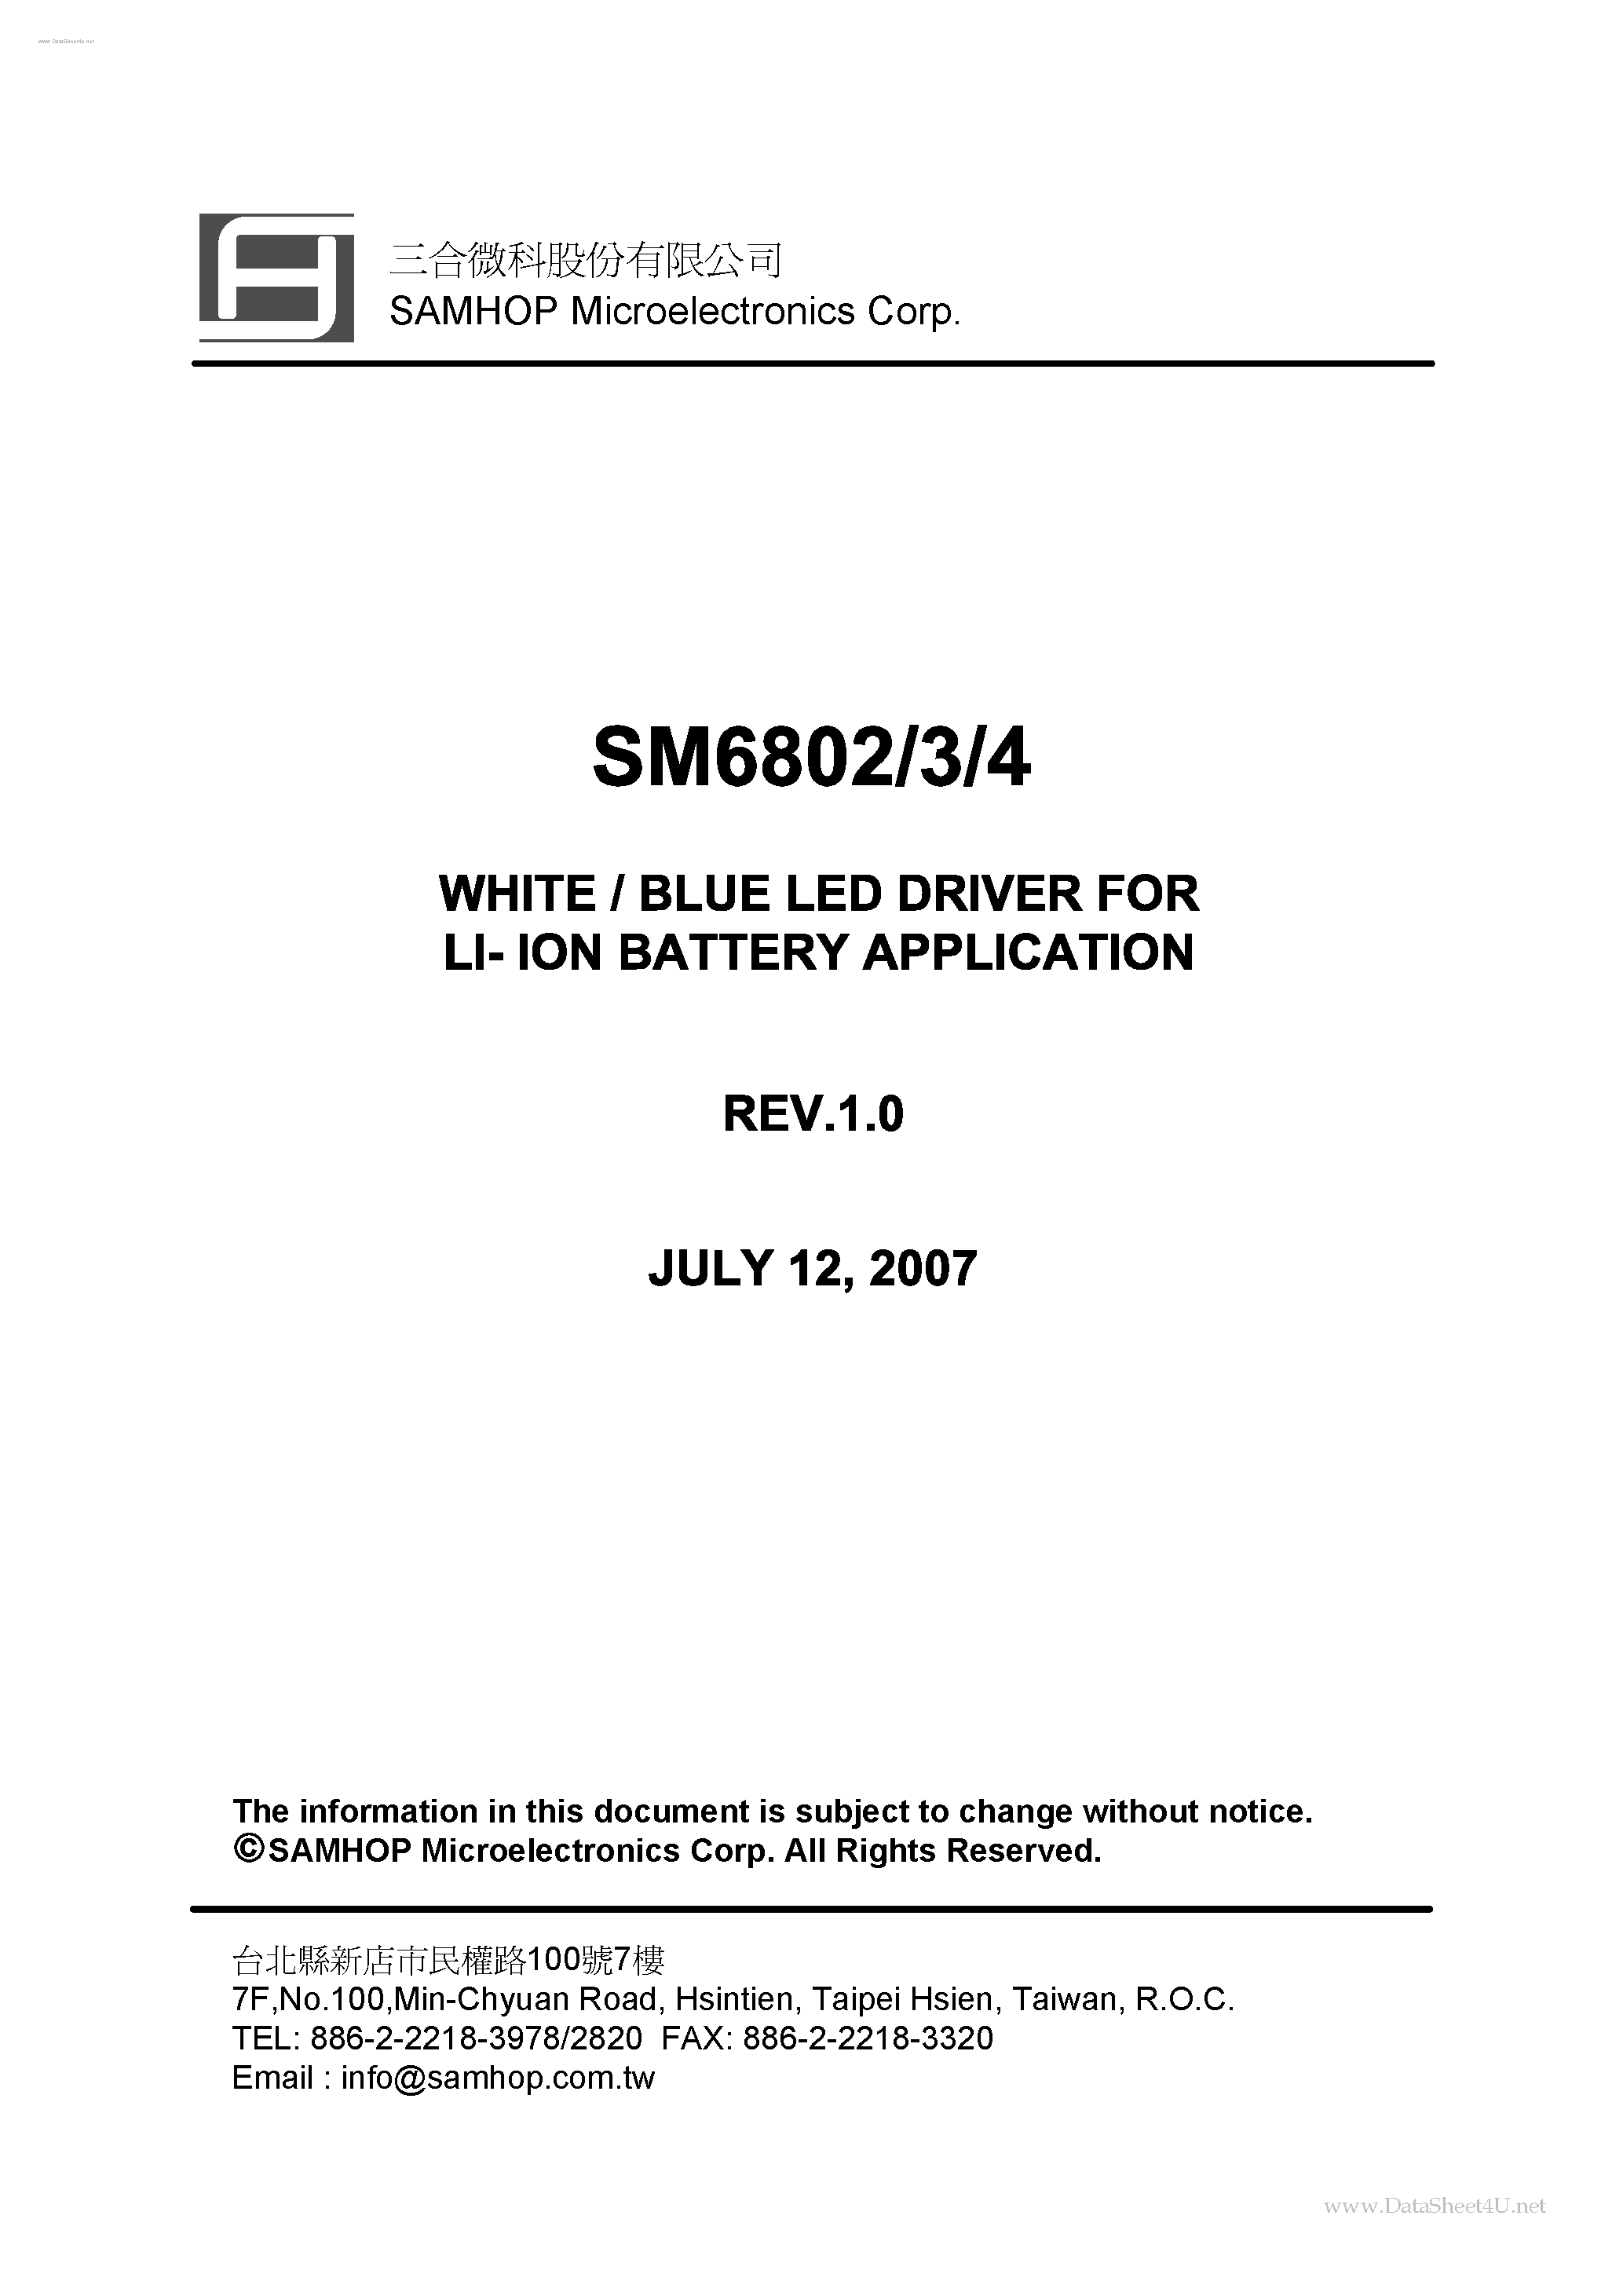 Даташит SM6802 - (SM6802 - SM6804) WHITE / BLUE LED DRIVER страница 1